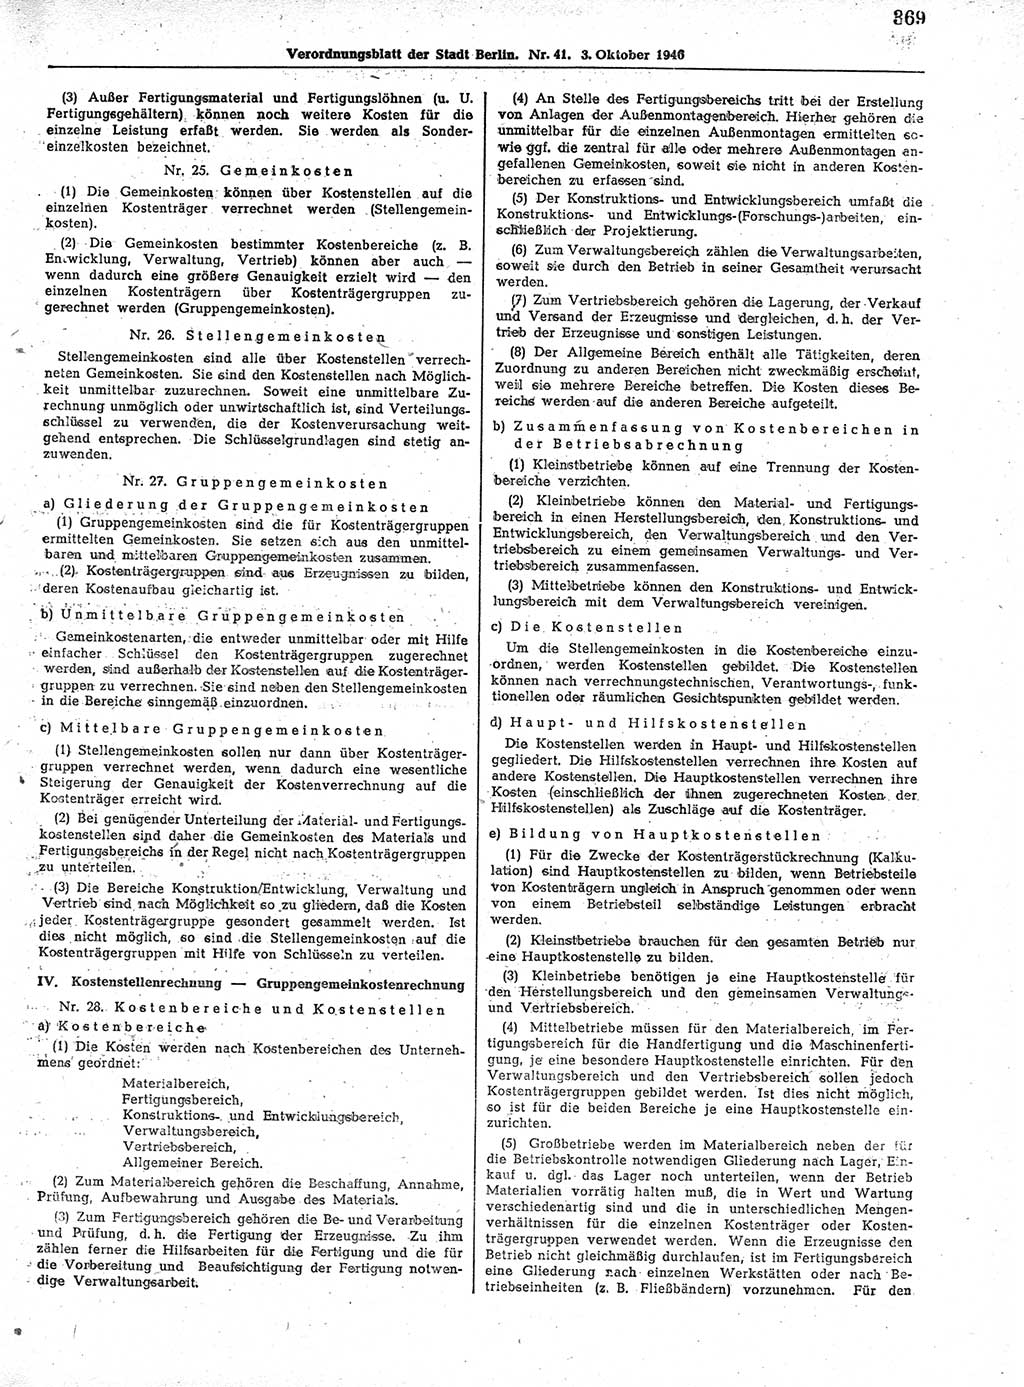 Verordnungsblatt (VOBl.) der Stadt Berlin, für Groß-Berlin 1946, Seite 369 (VOBl. Bln. 1946, S. 369)